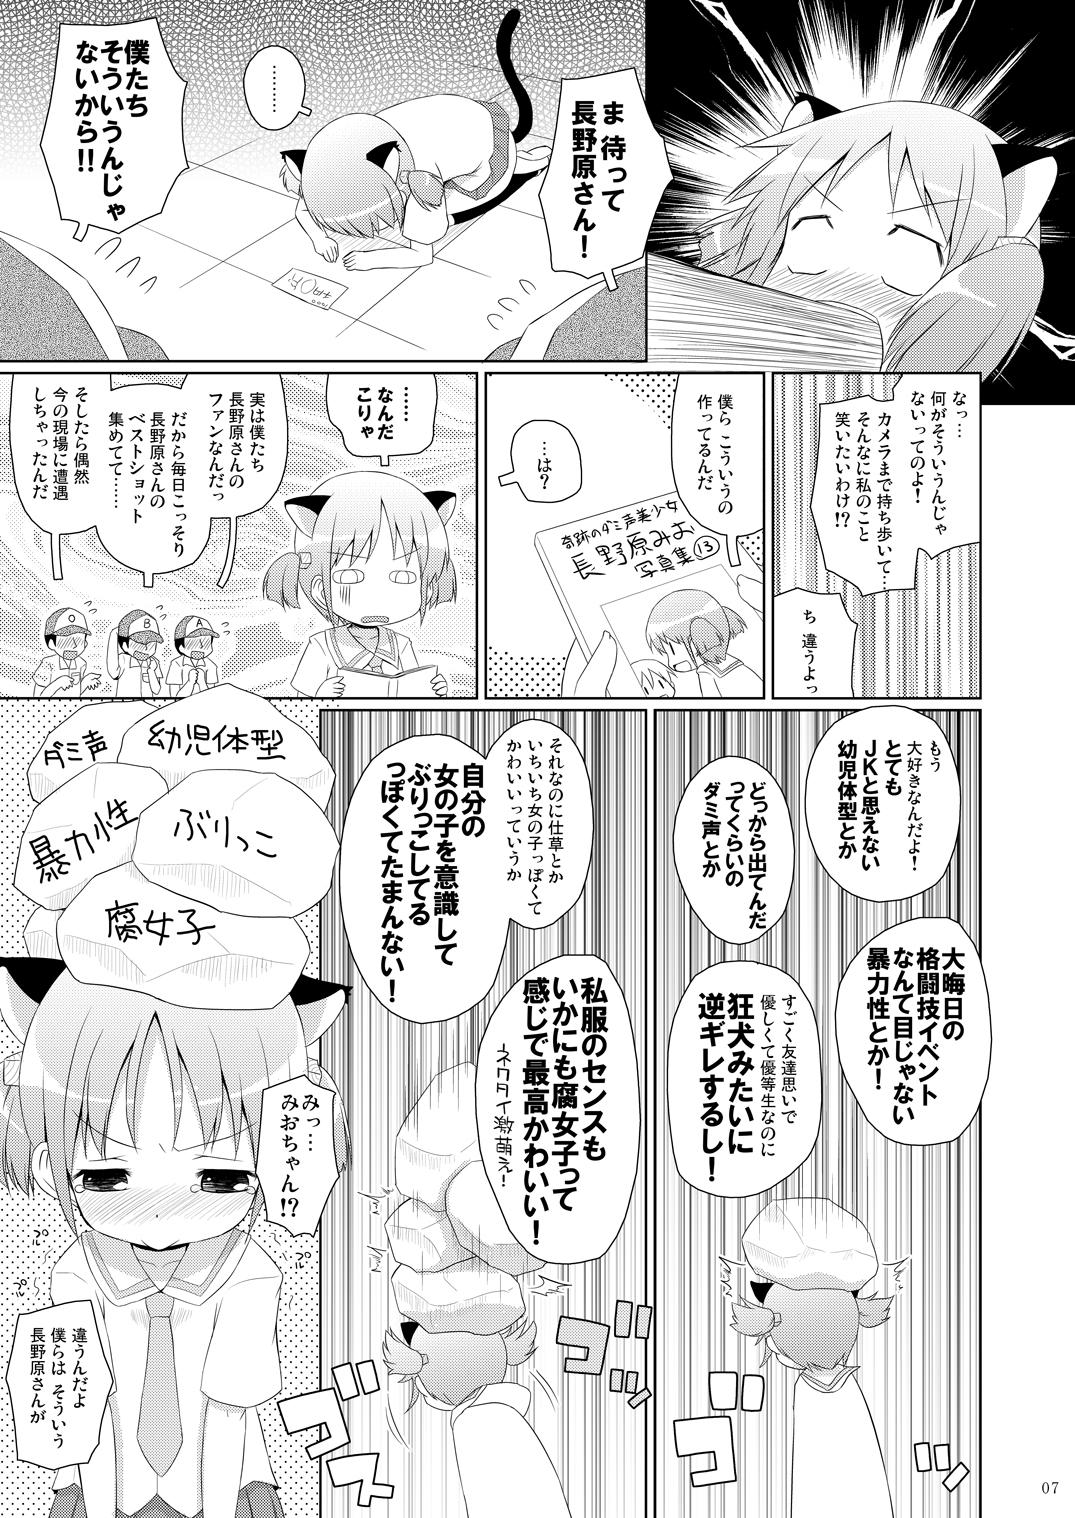 Exibicionismo Chanmio no Mainichi Diary. - Nichijou Strip - Page 6